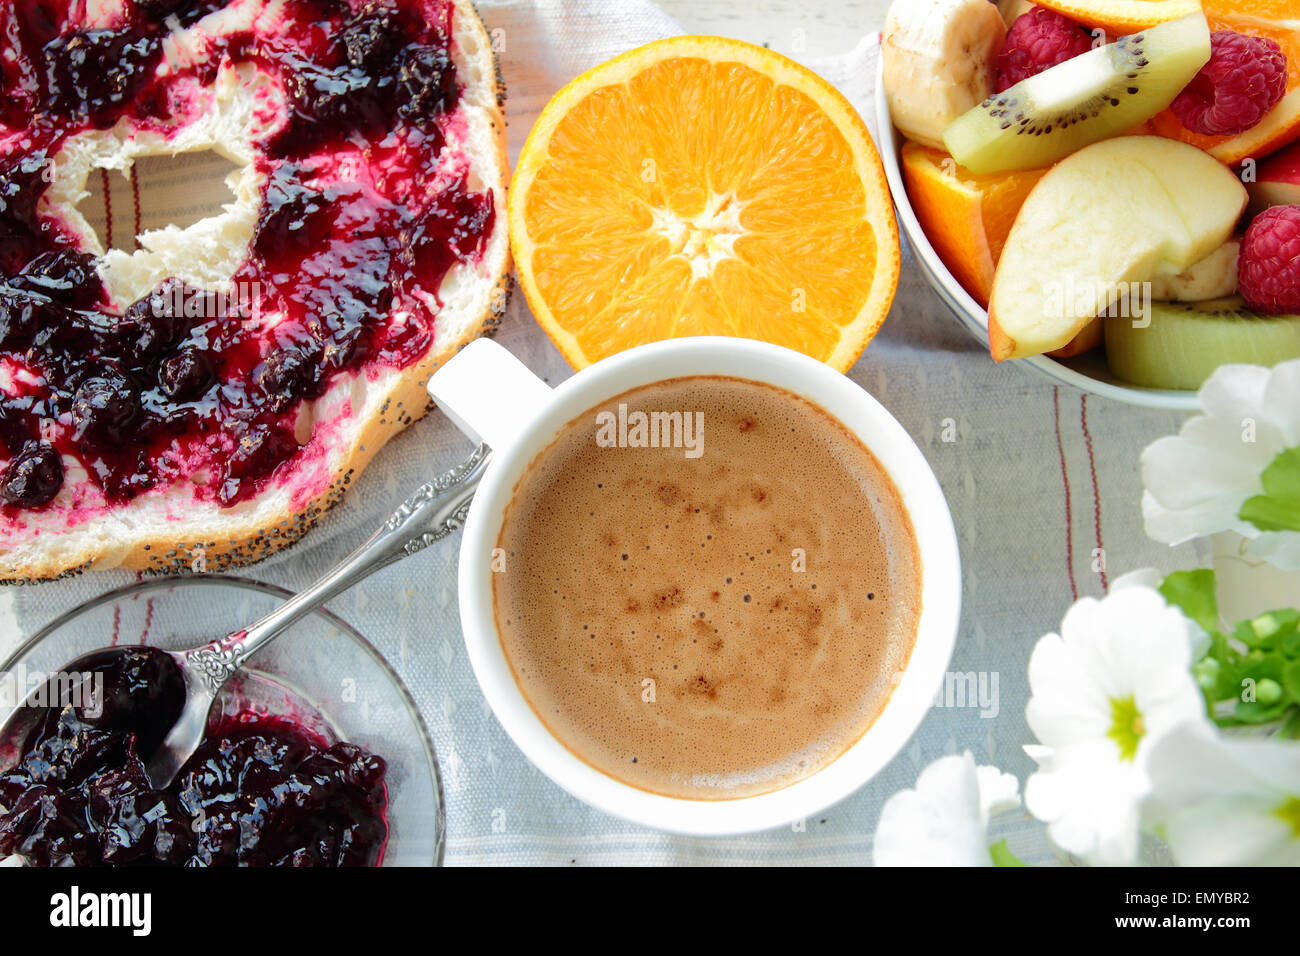 Frühstück mit Brot mit Johannisbeeren Marmelade, Kaffee und Obst Stockfoto